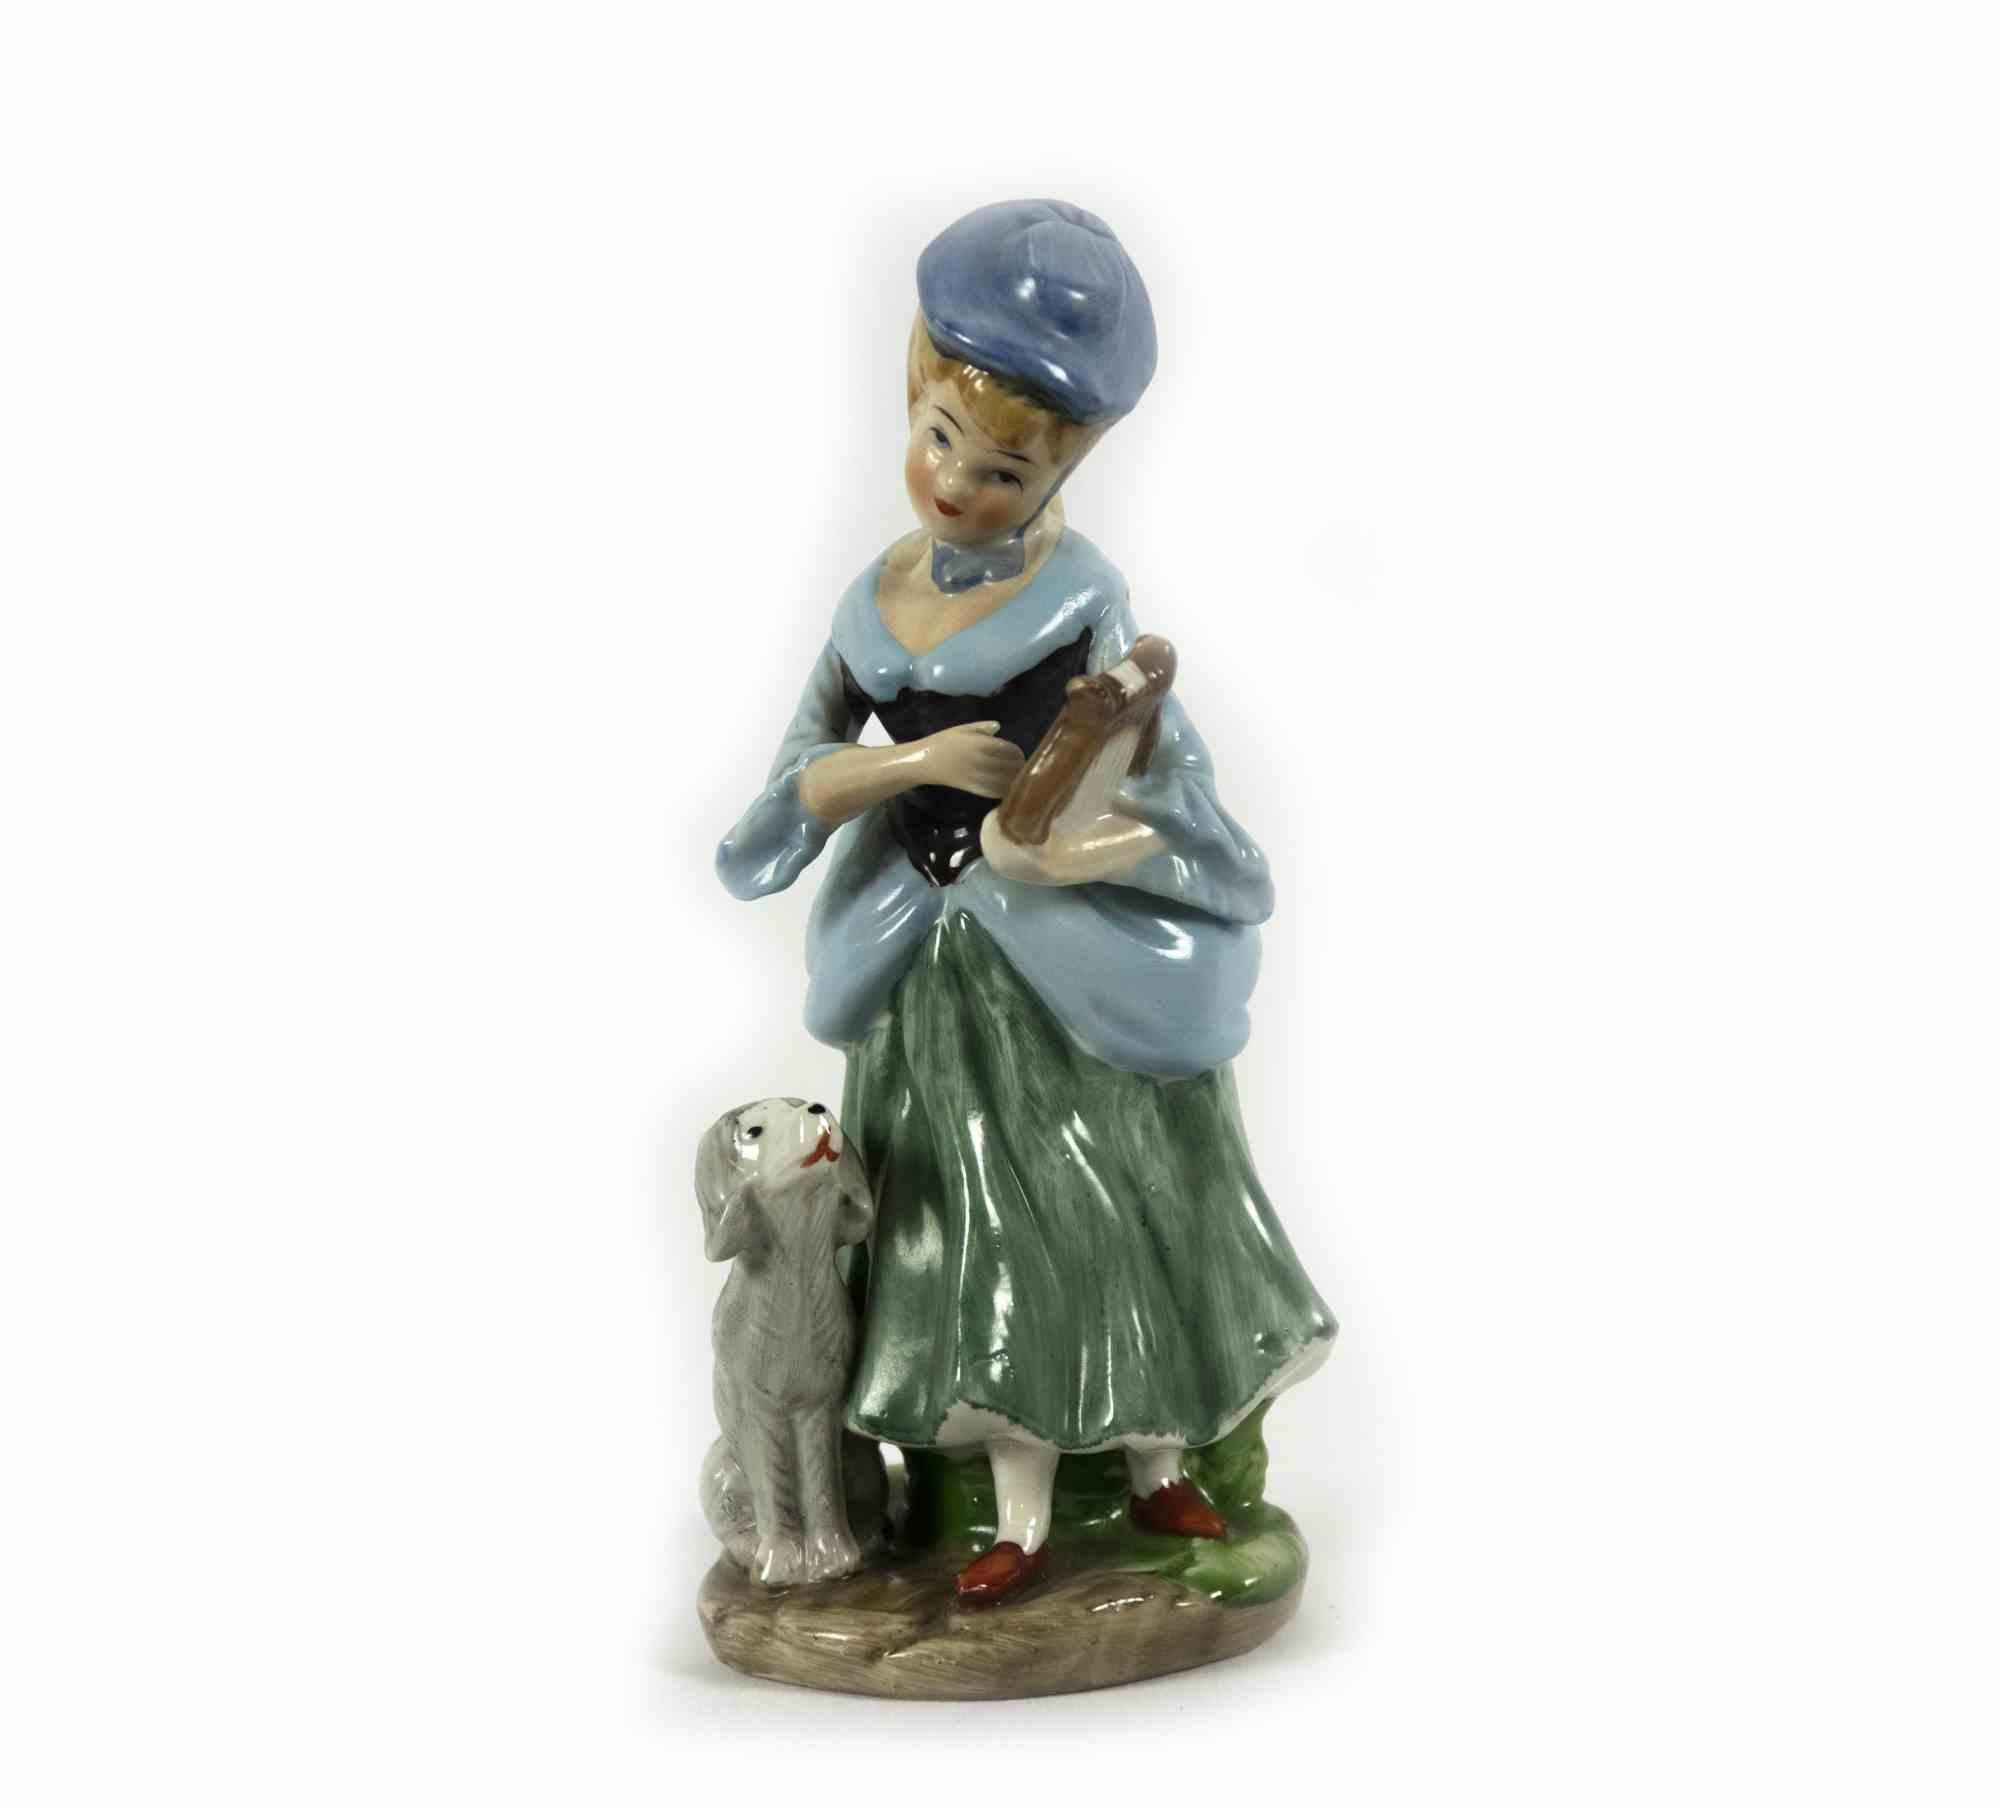 Vieille sculpture en porcelaine d'une dame avec un chien est un objet décoratif original réalisé par un artiste anonyme dans la moitié du 20ème siècle. 

Objet décoratif en porcelaine représentant une jeune fille avec un chien et une lyre dans les